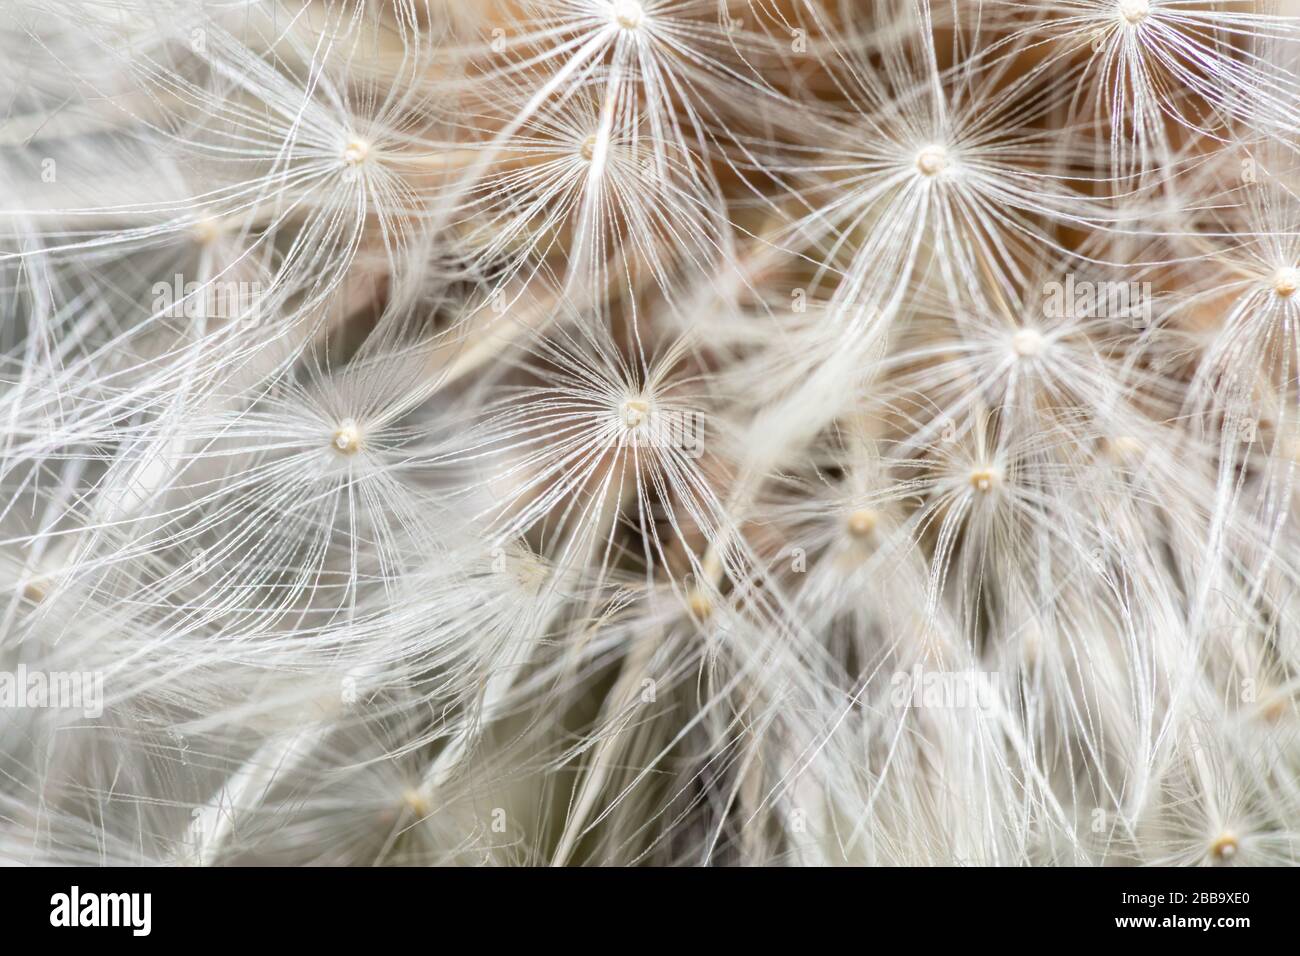 Vue rapprochée de la tête de semence d'une fleur sauvage de pissenlit (Taraxacum) Banque D'Images